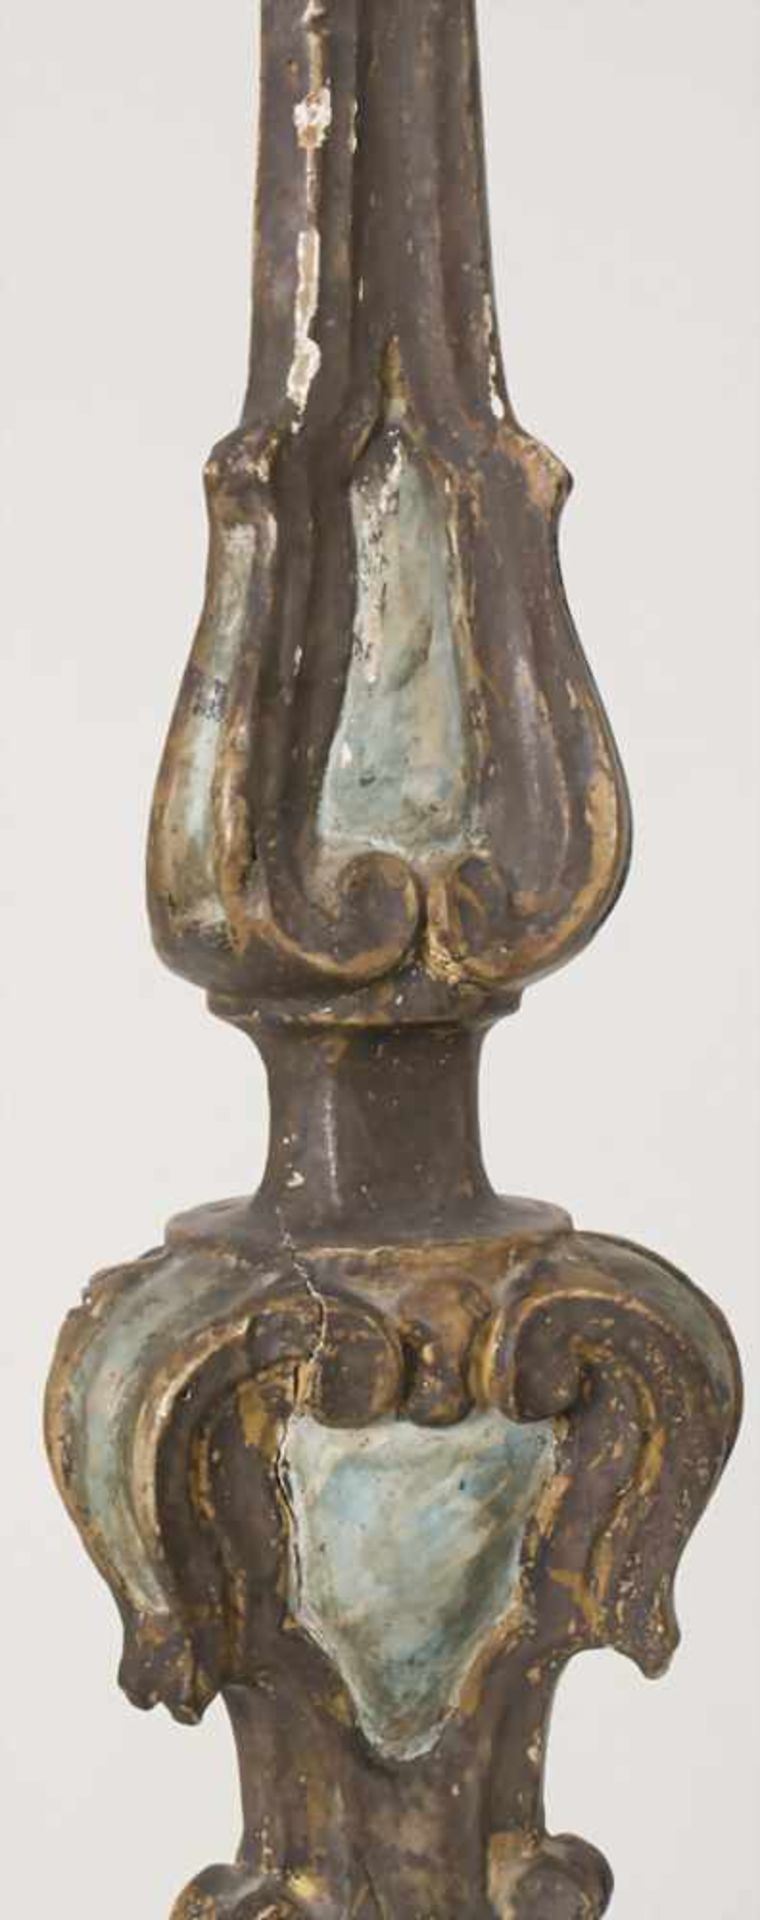 Altarleuchter / An altar candlestick, süddeutsch 18. Jh.Material: Holz, geschnitzt, farbig - Bild 7 aus 7